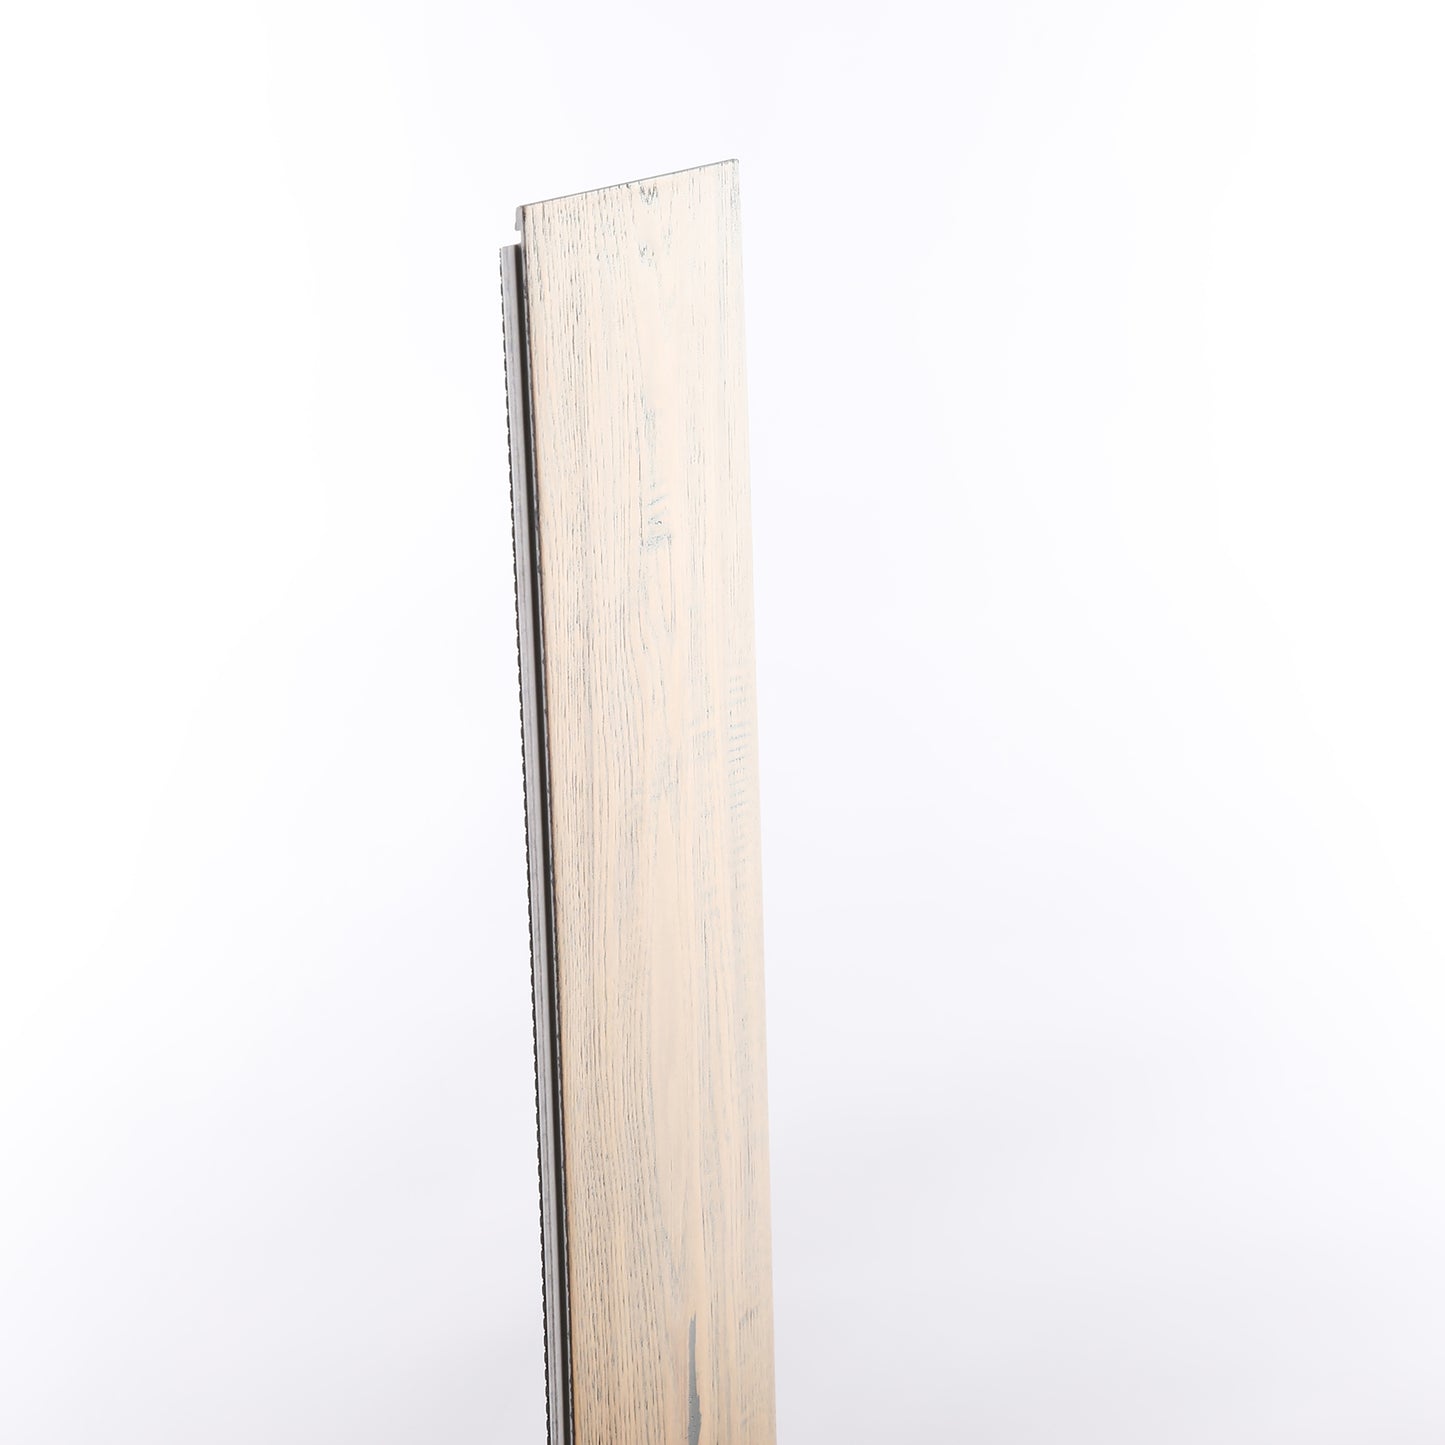 8mm Weathered Oak Waterproof Engineered Hardwood Flooring 7.48 in. Wide x Varying Length Long